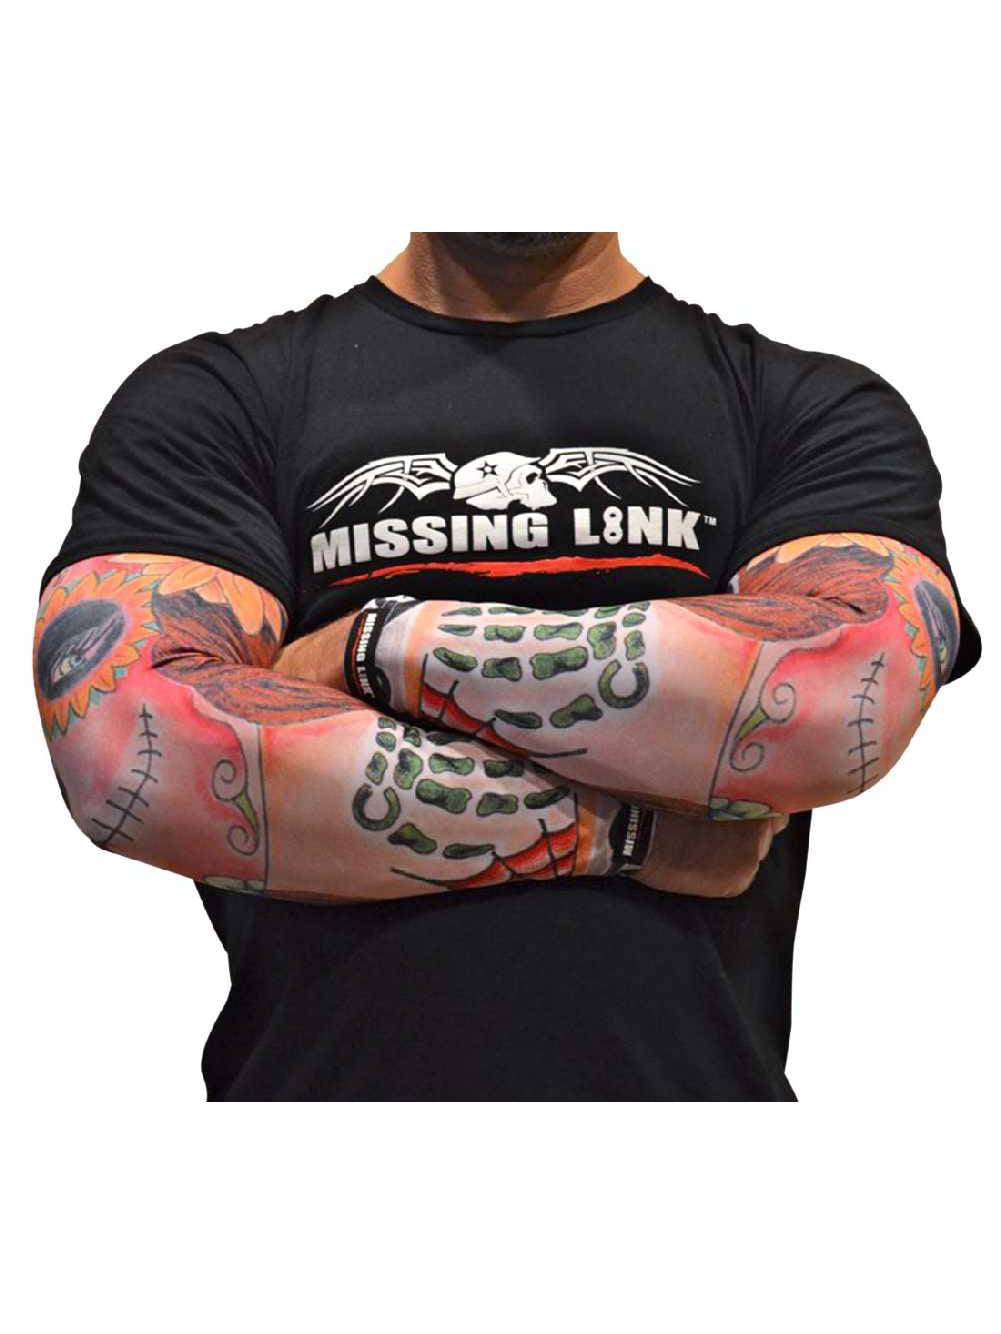 Missing Link SPF 50 Gunz N Money ArmPro Tan/Black, Medium